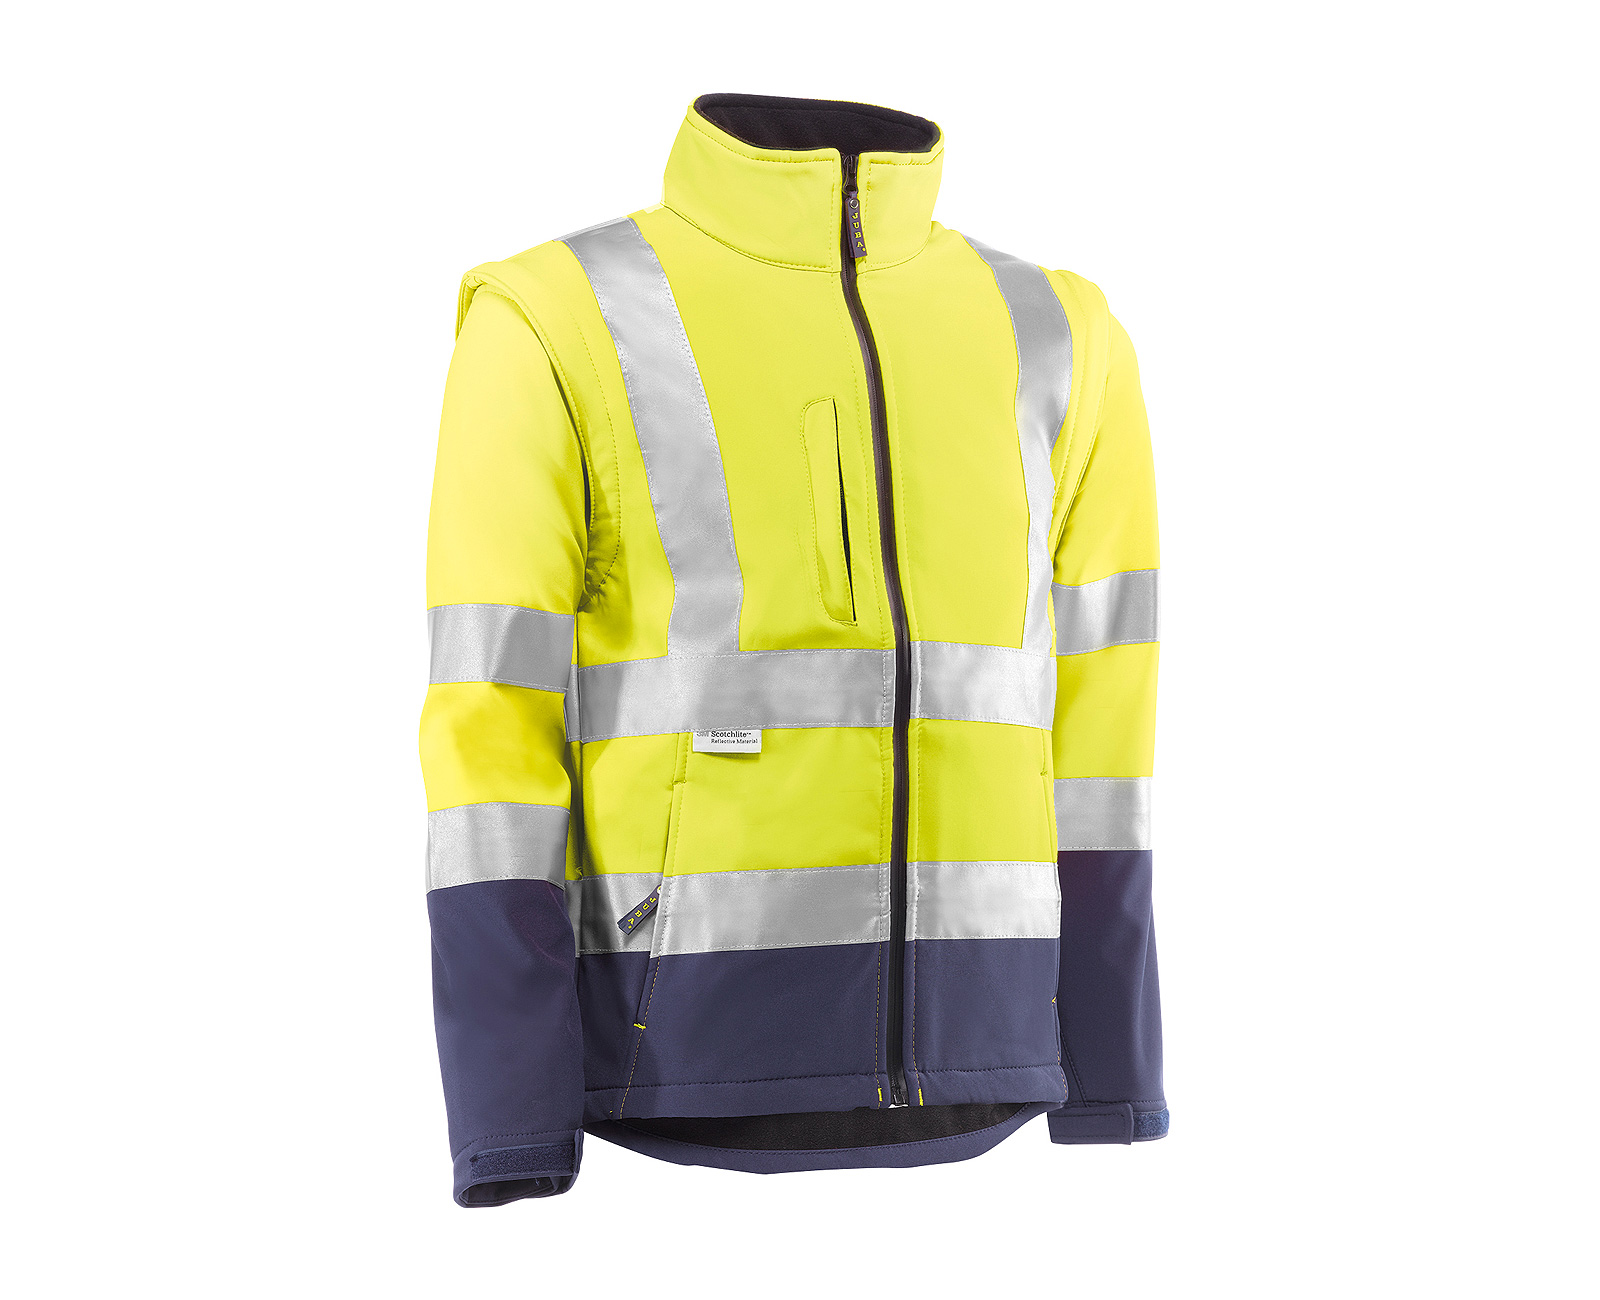 Chaqueta de trabajo Shof-Shell alta visibilidad bicolor - ropa de  trabajo y vestuario laboral